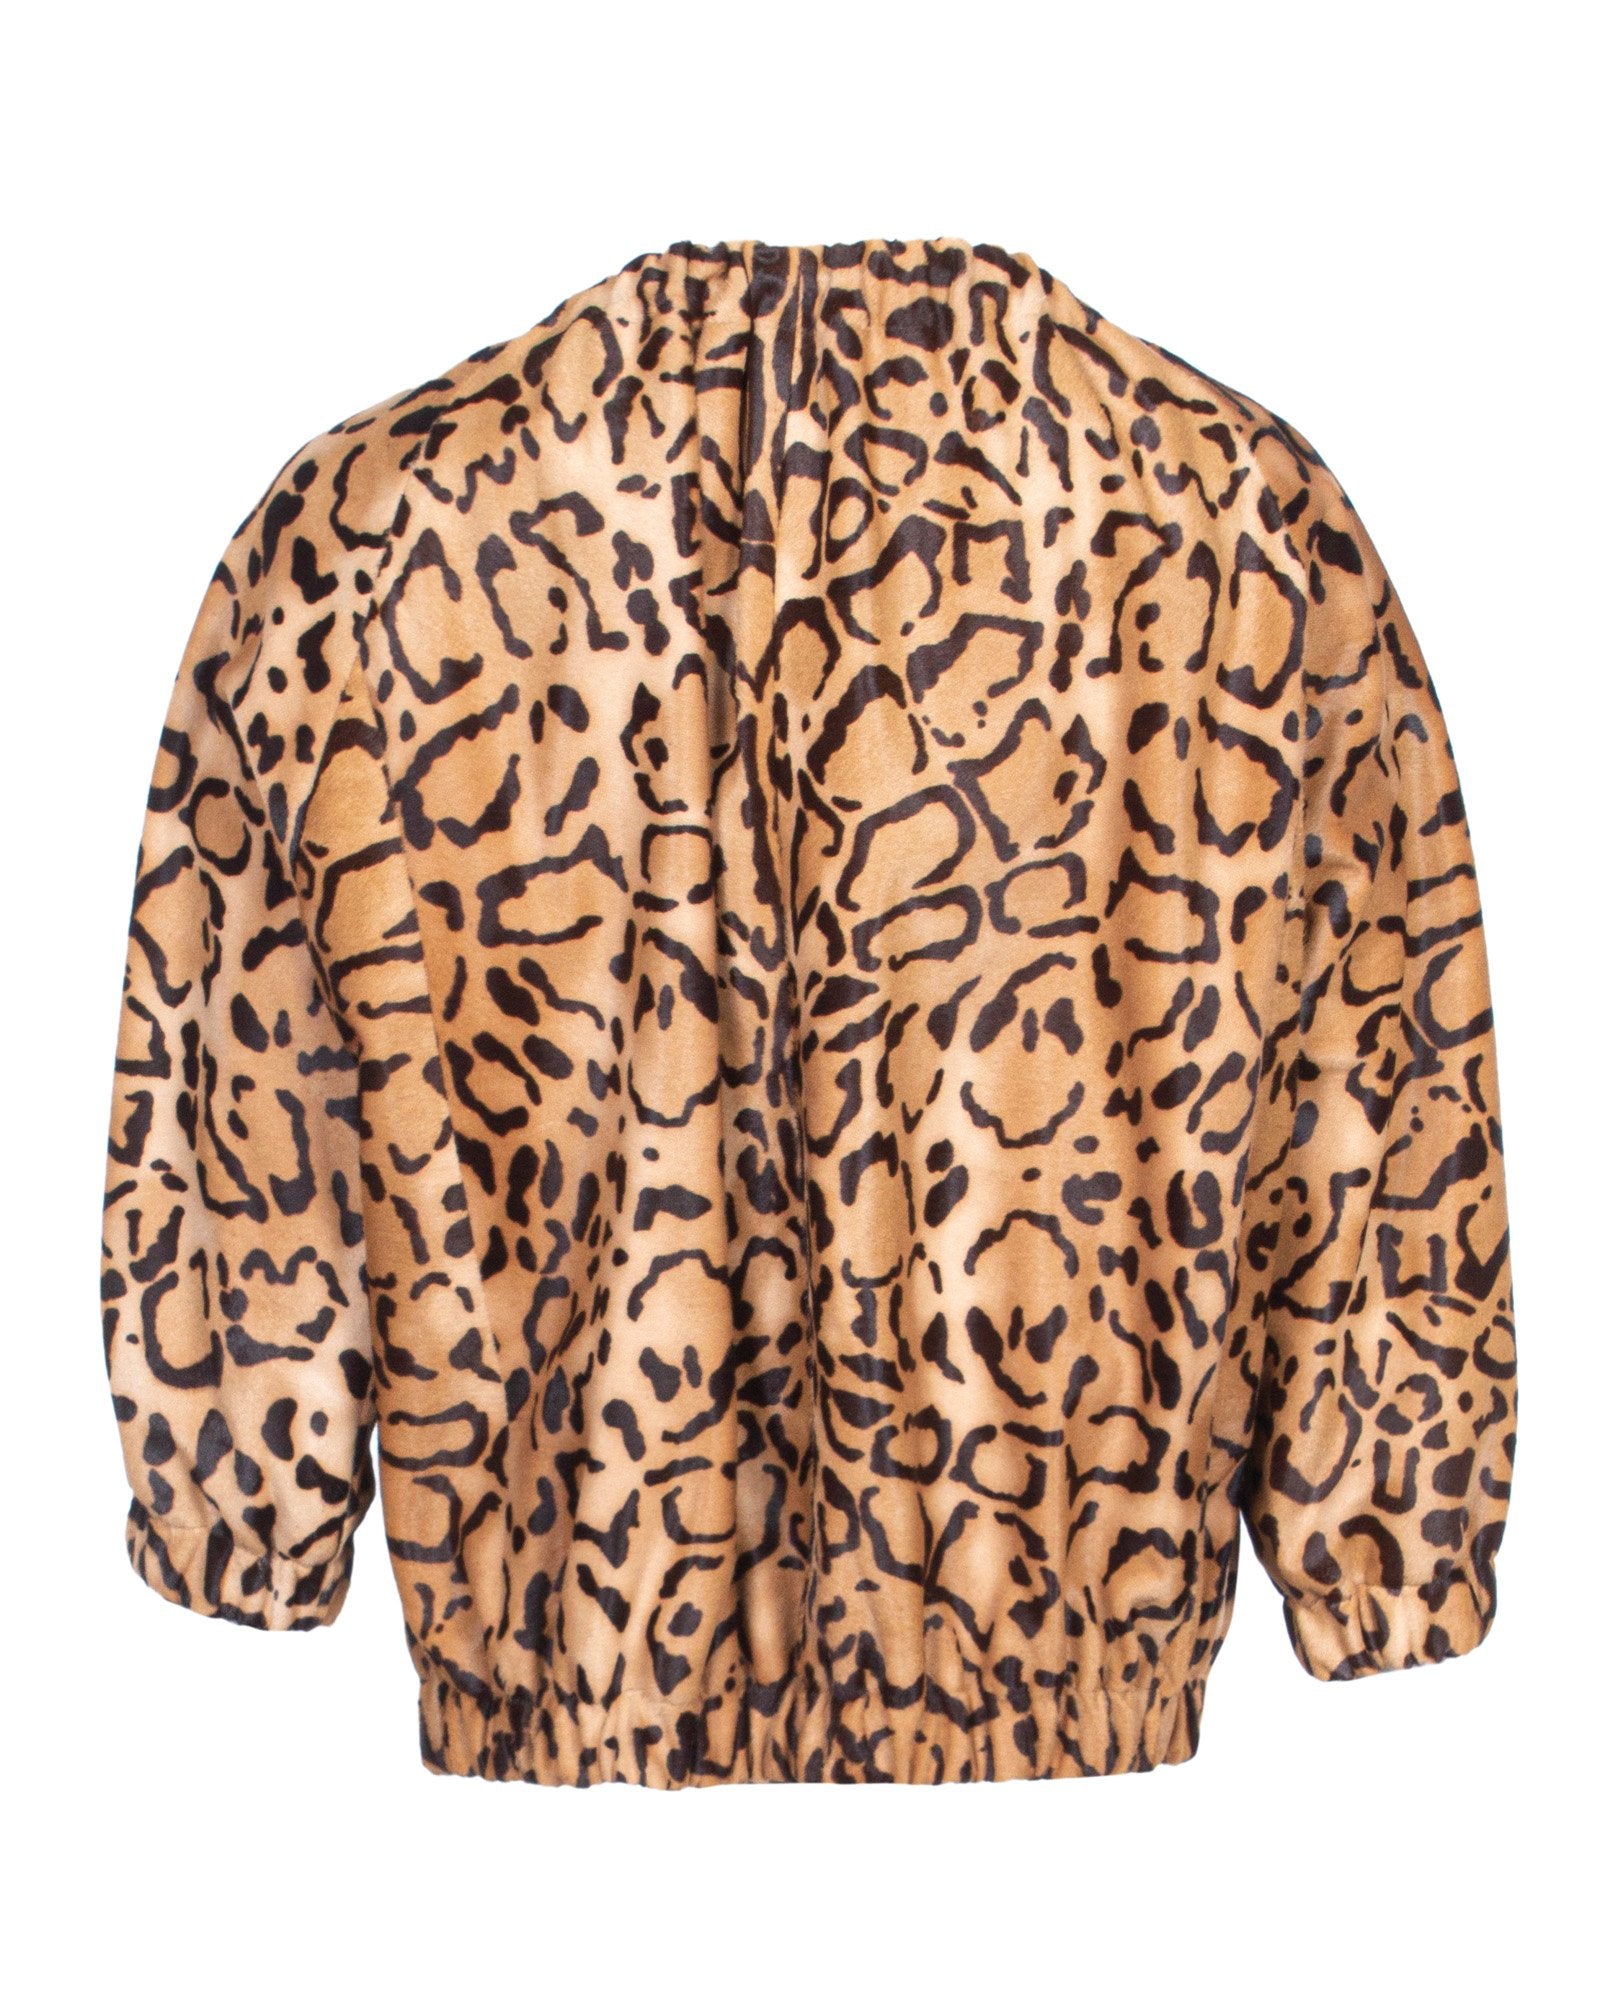 Leopard Pattern Jacket